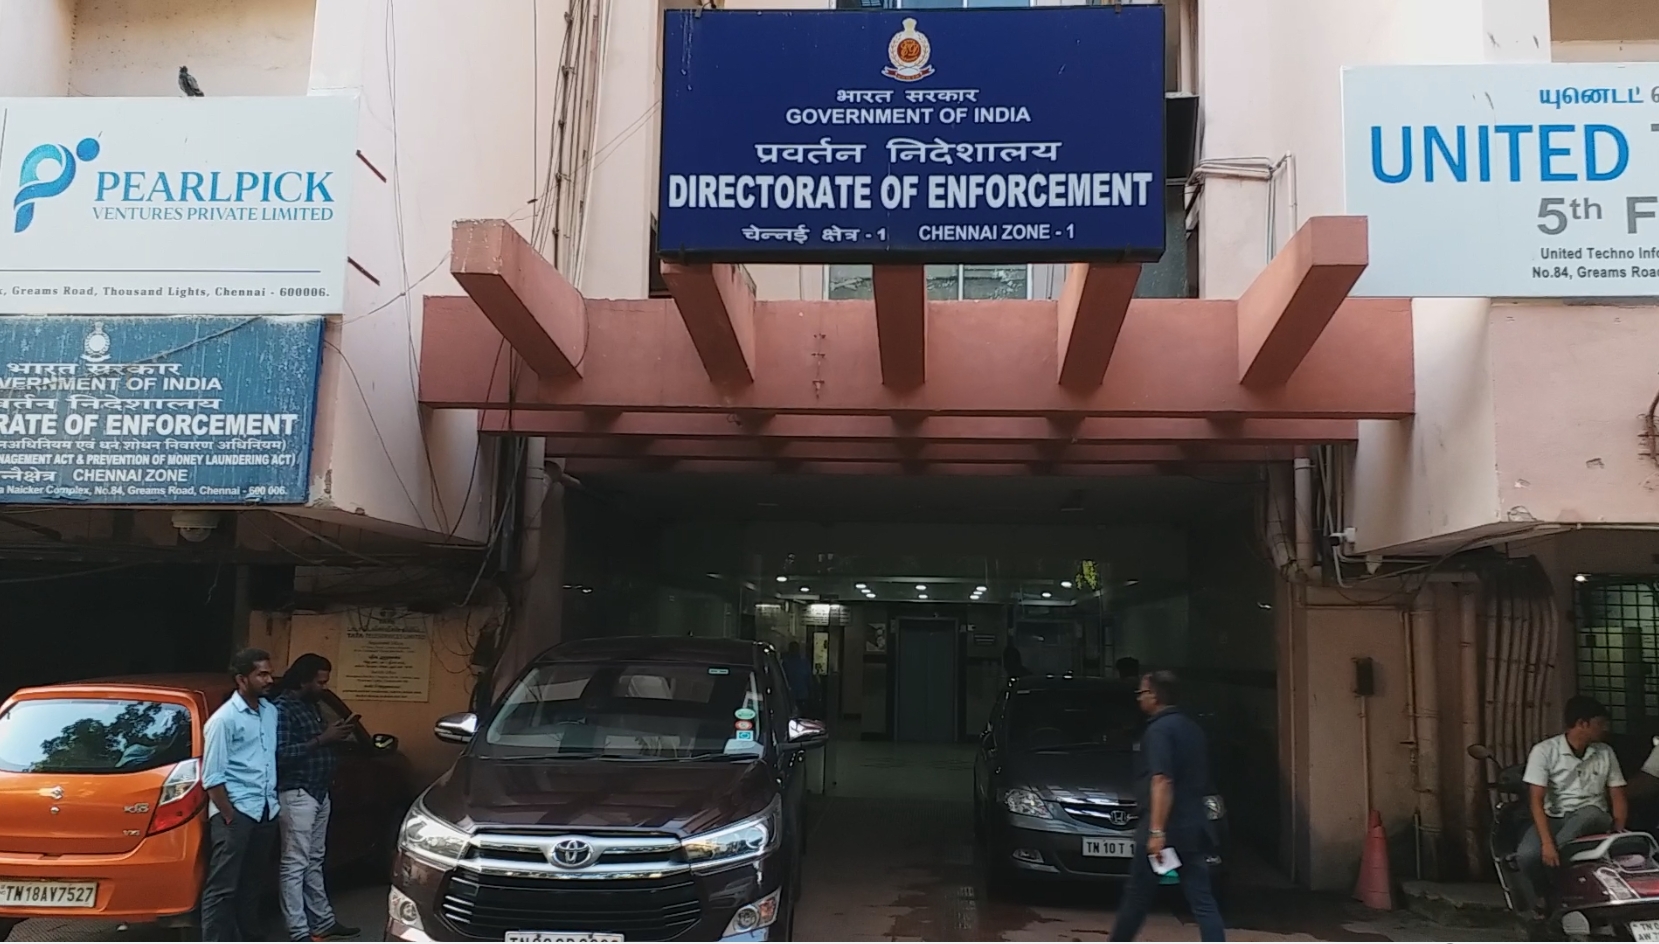 இயக்குநர் சங்கரிடம் அமலாக்கத்துறை அதிகாரிகள் 3 மணி நேர விசாரணை Enforcement directorate officer interrogated Director Shankar for 3 hours